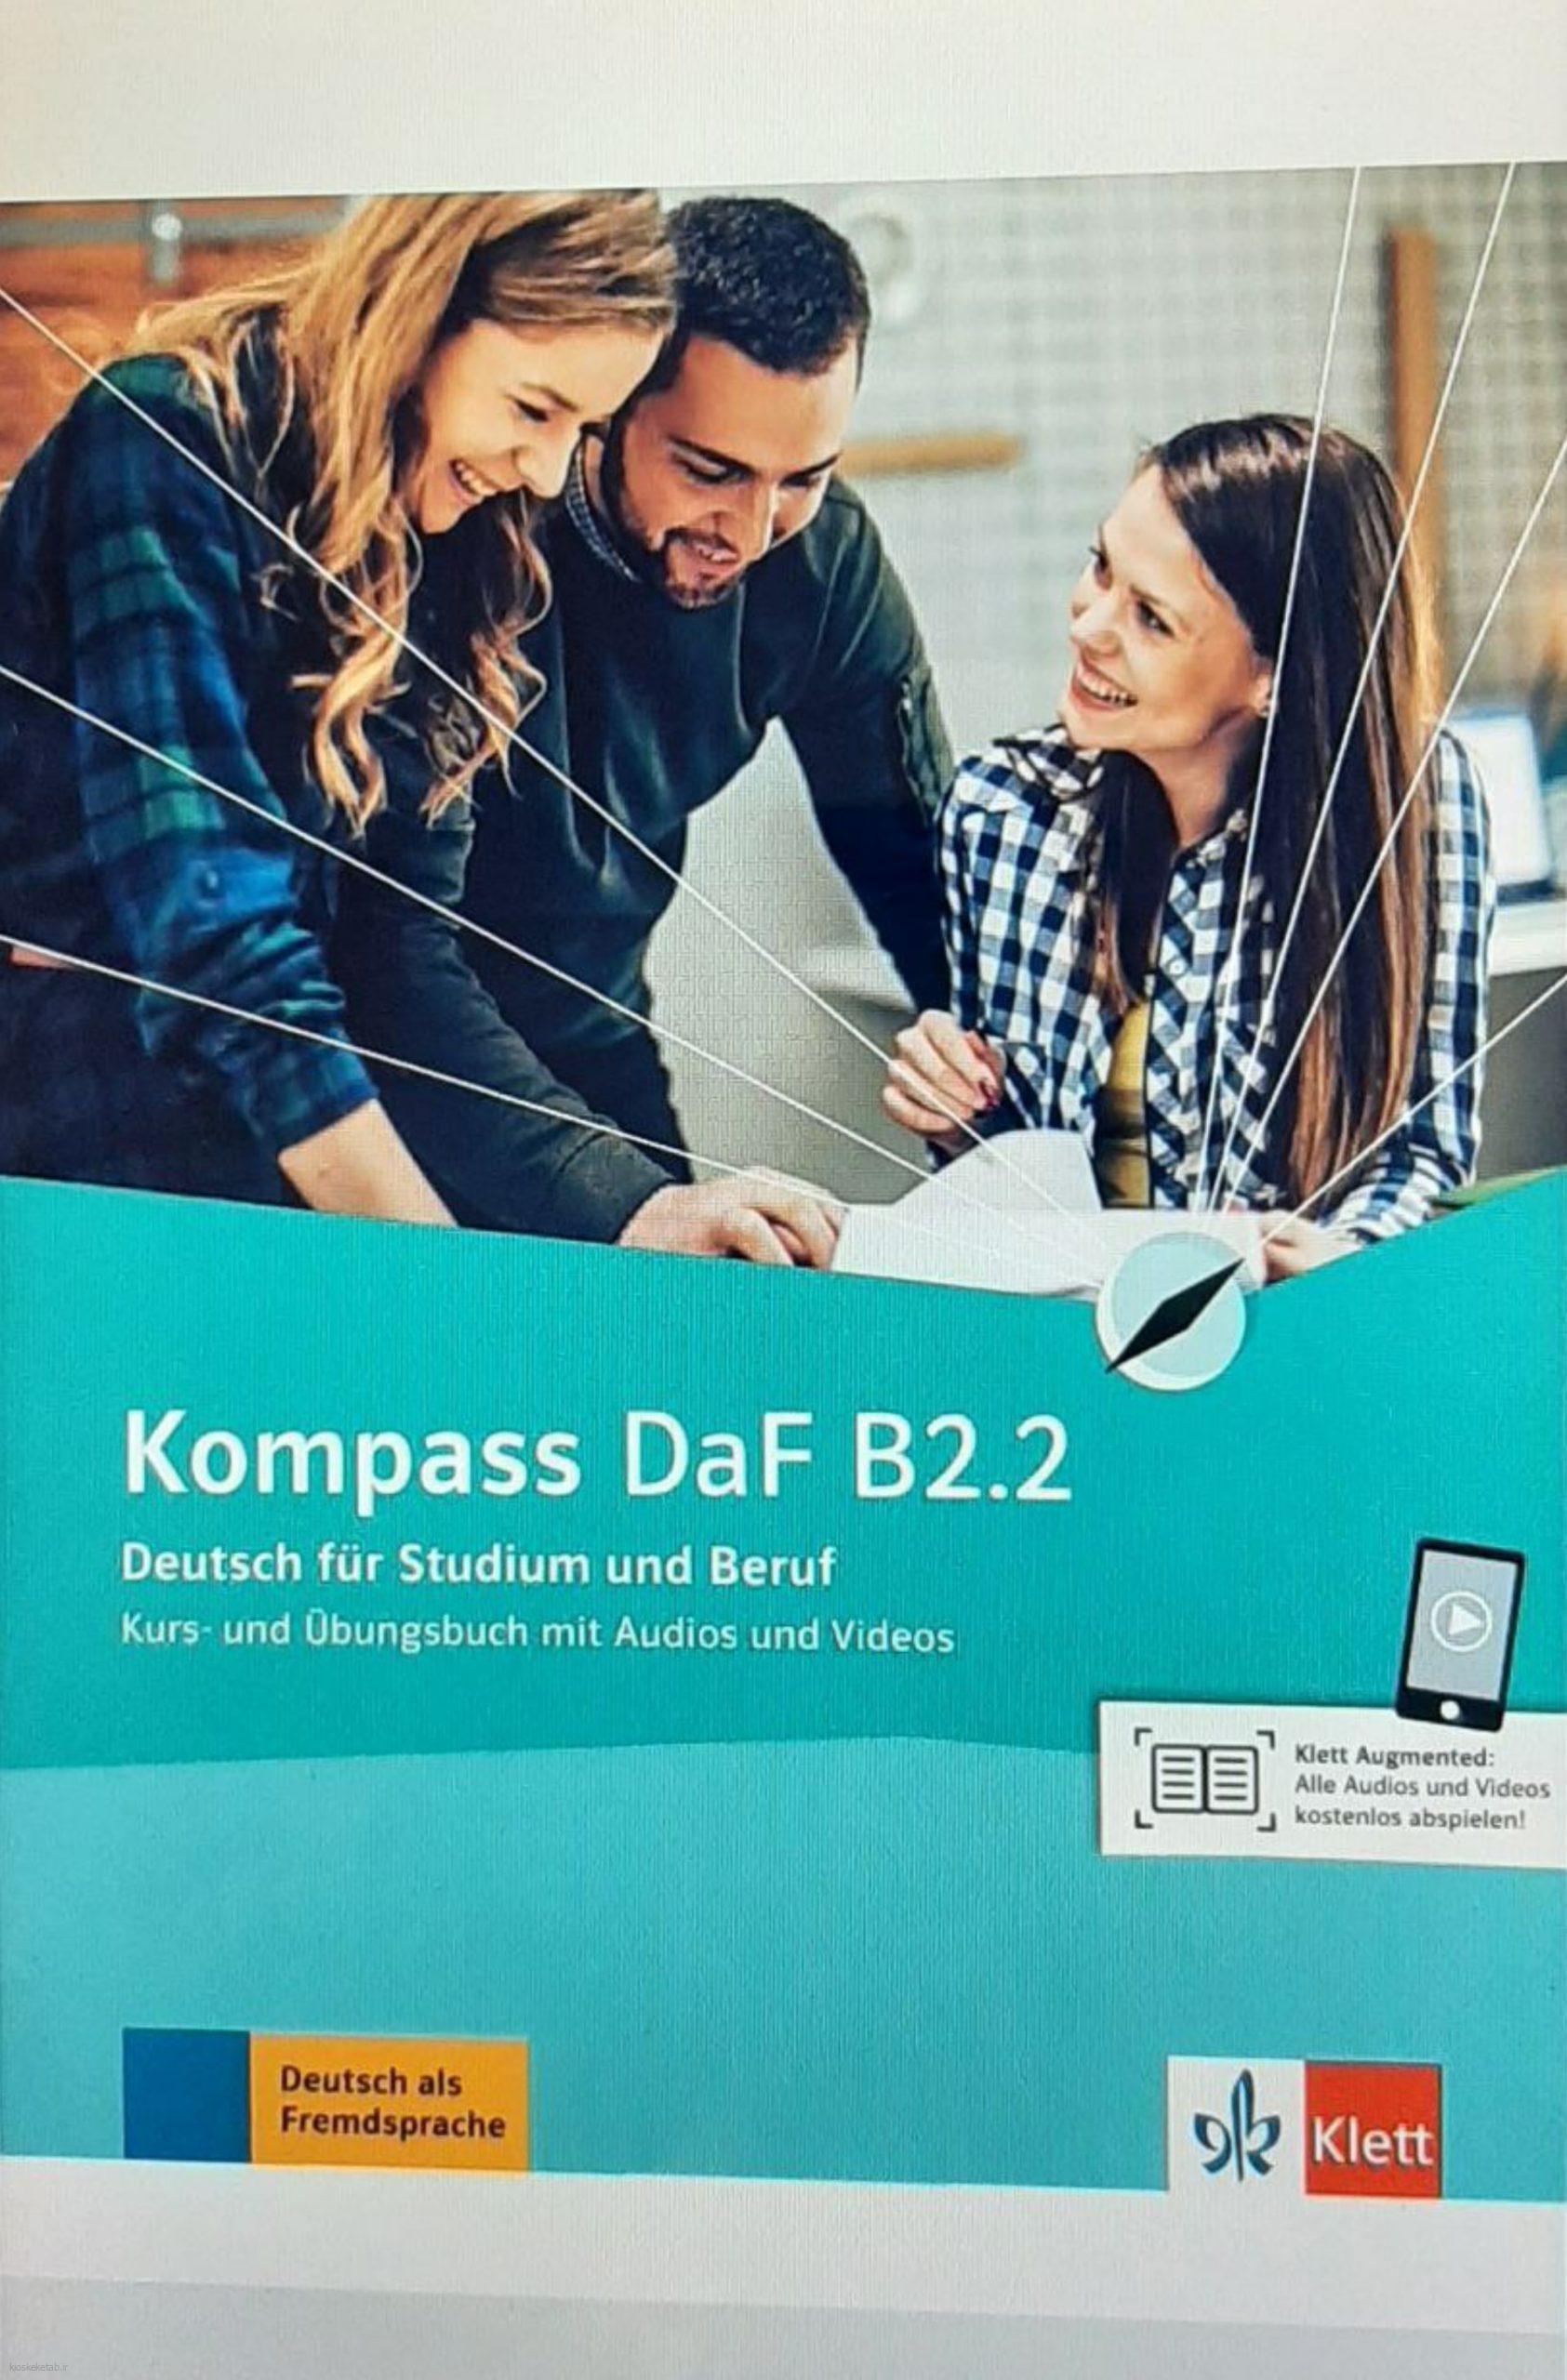 دانلود کتاب آلمانیKompass DaF B2.2